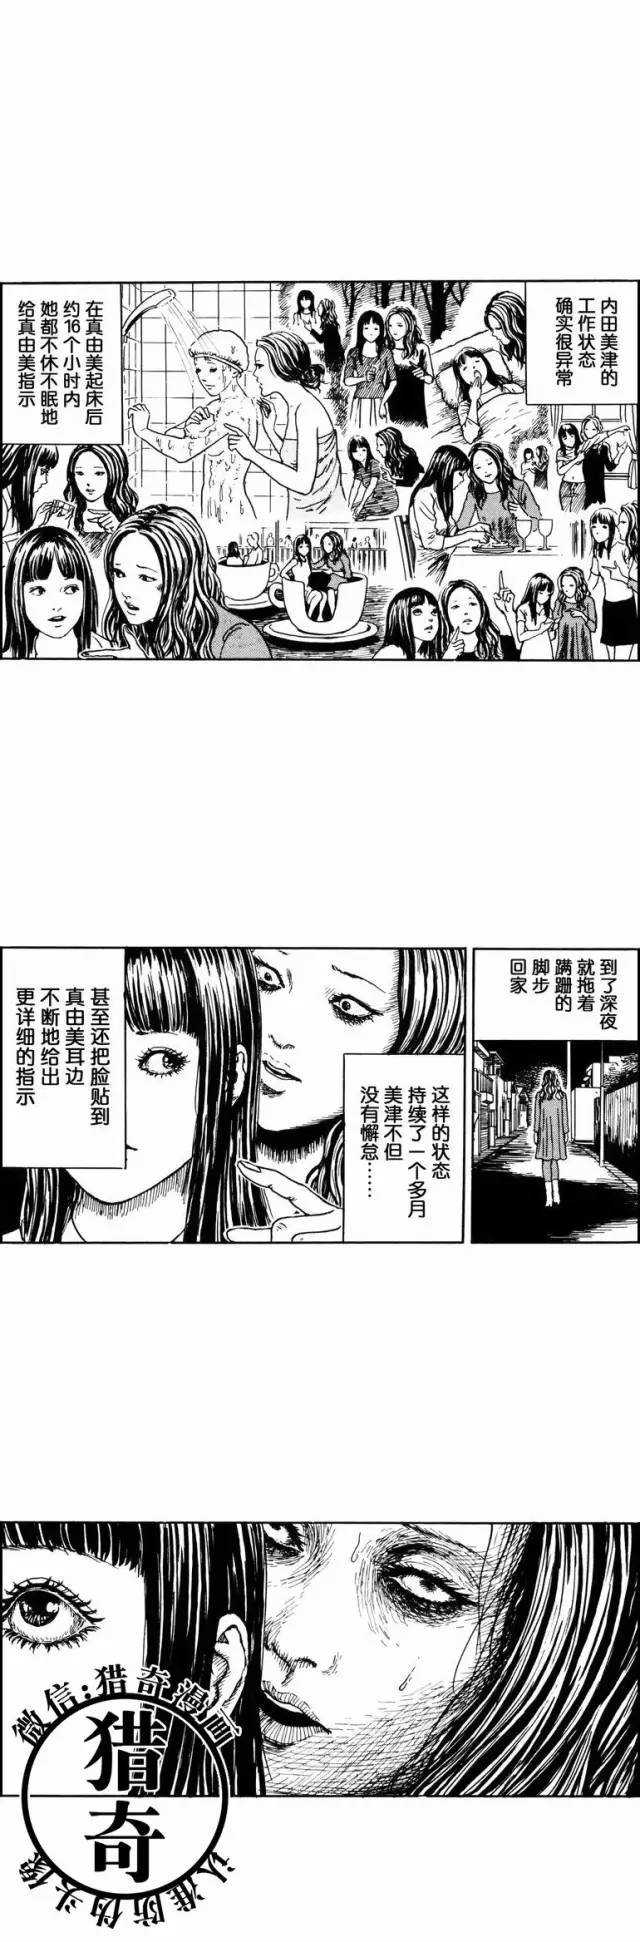 日本恐怖漫画《耳鬓私语的女人》伊藤润二-黑白漫话